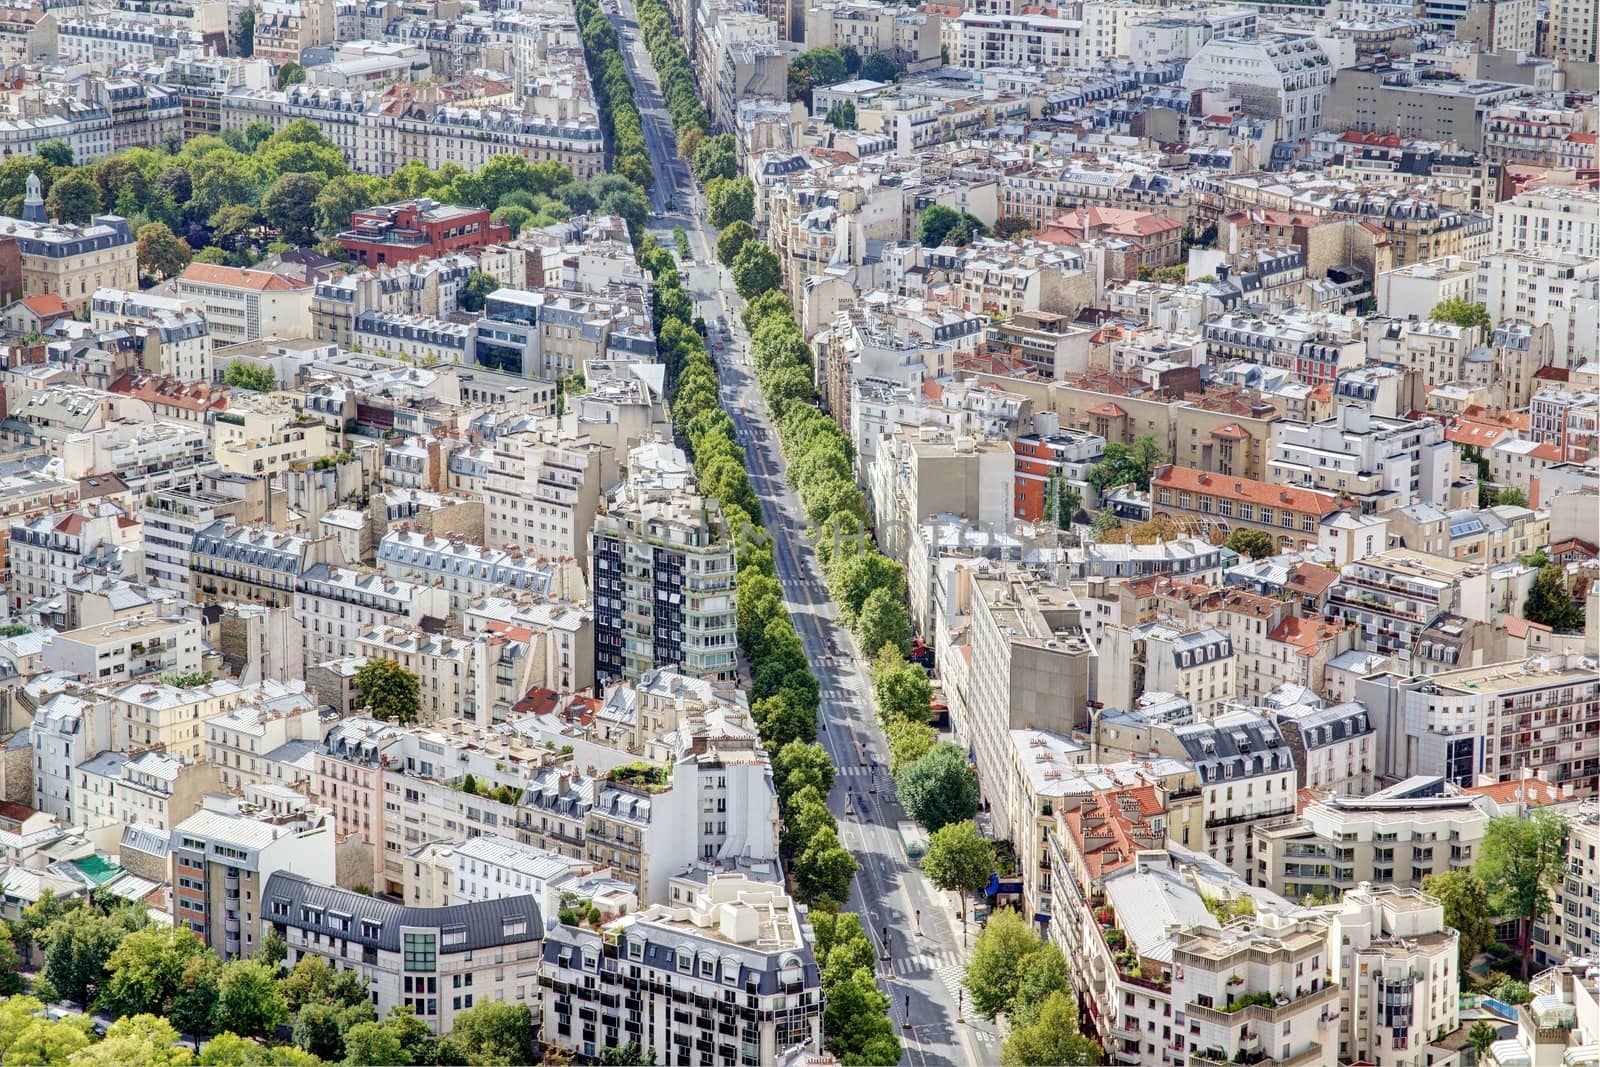 Parisian cityscape by Dermot68